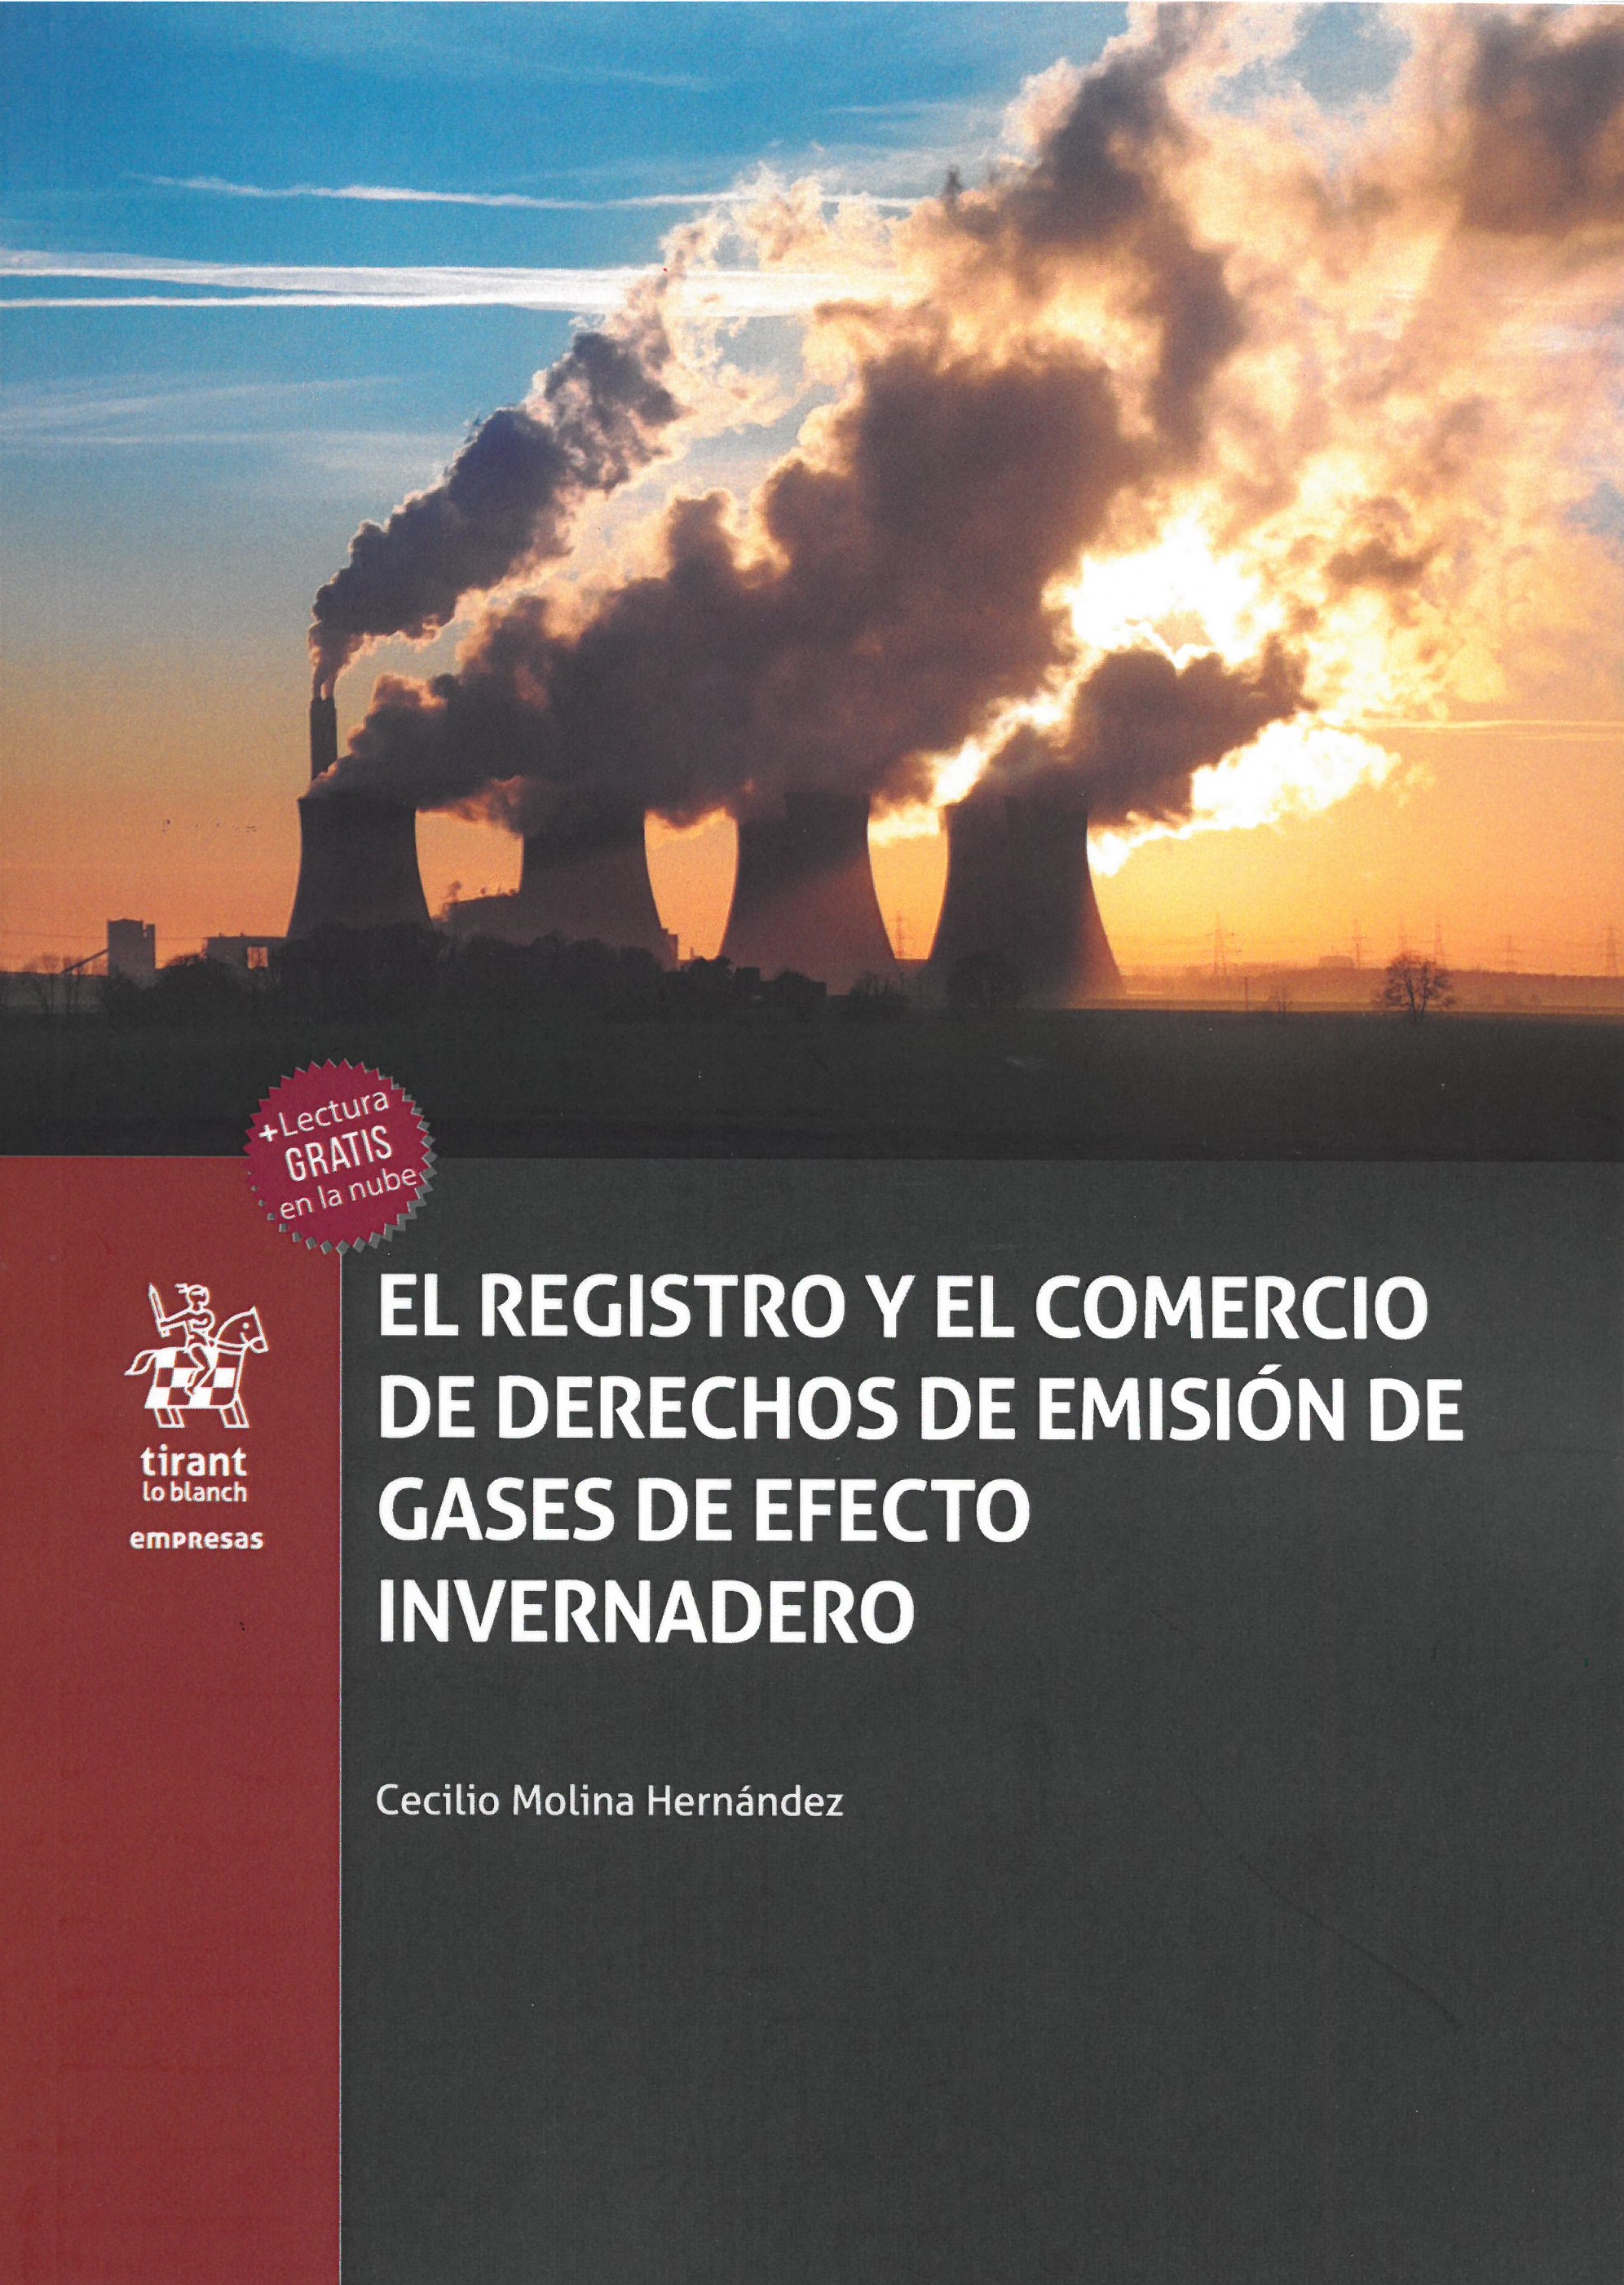 El registro y el comercio de derechos de emisión de gases de efecto invernadero